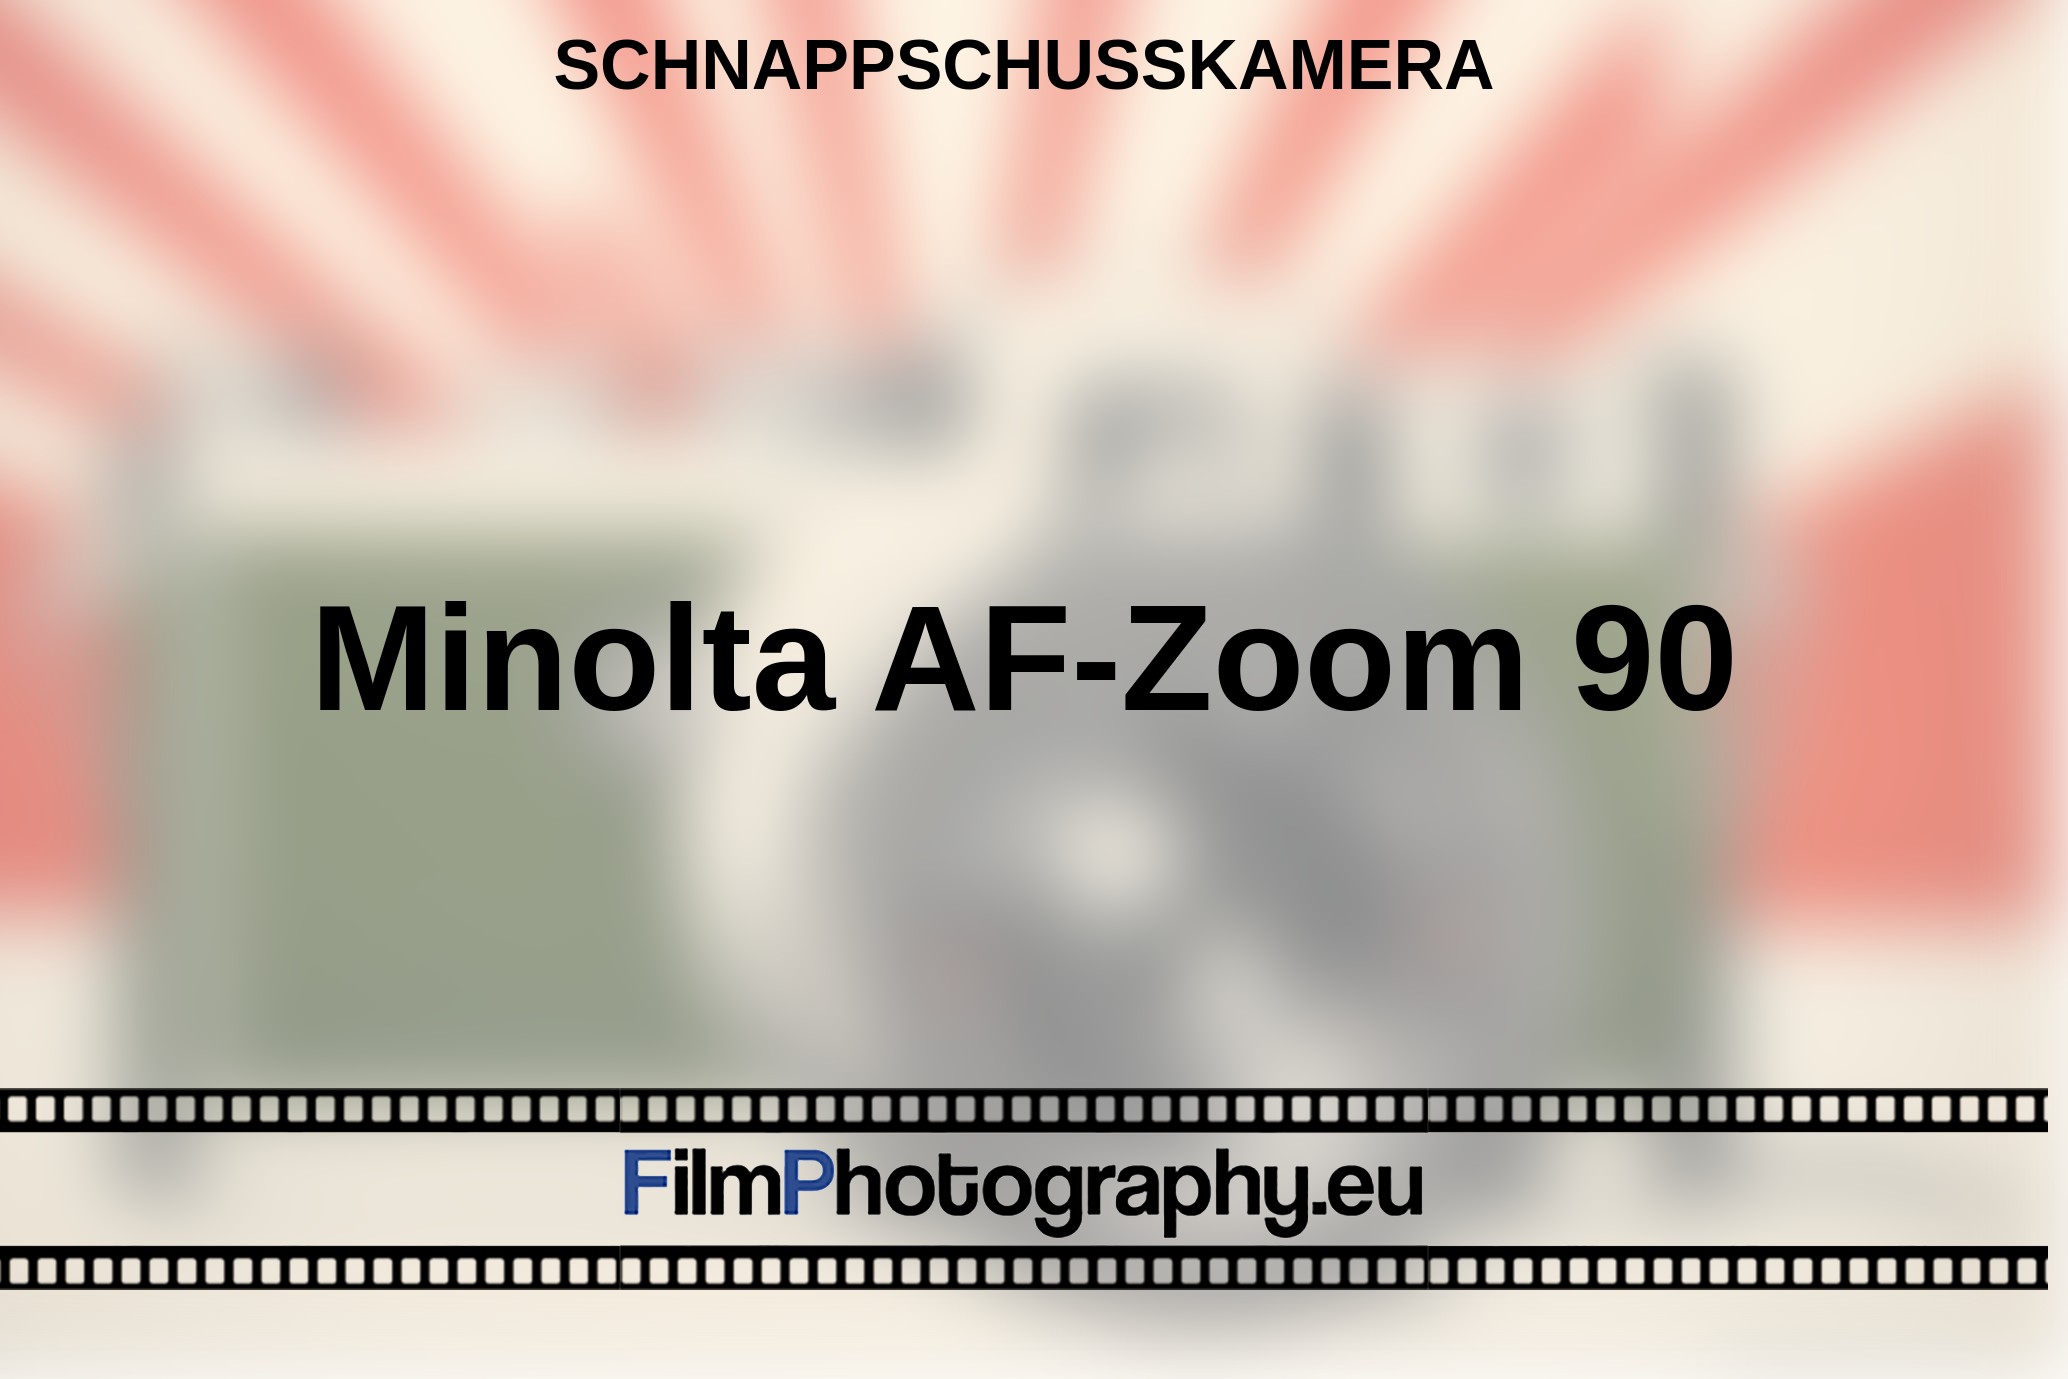 Minolta-AF-Zoom-90-Schnappschusskamera-bnv.jpg